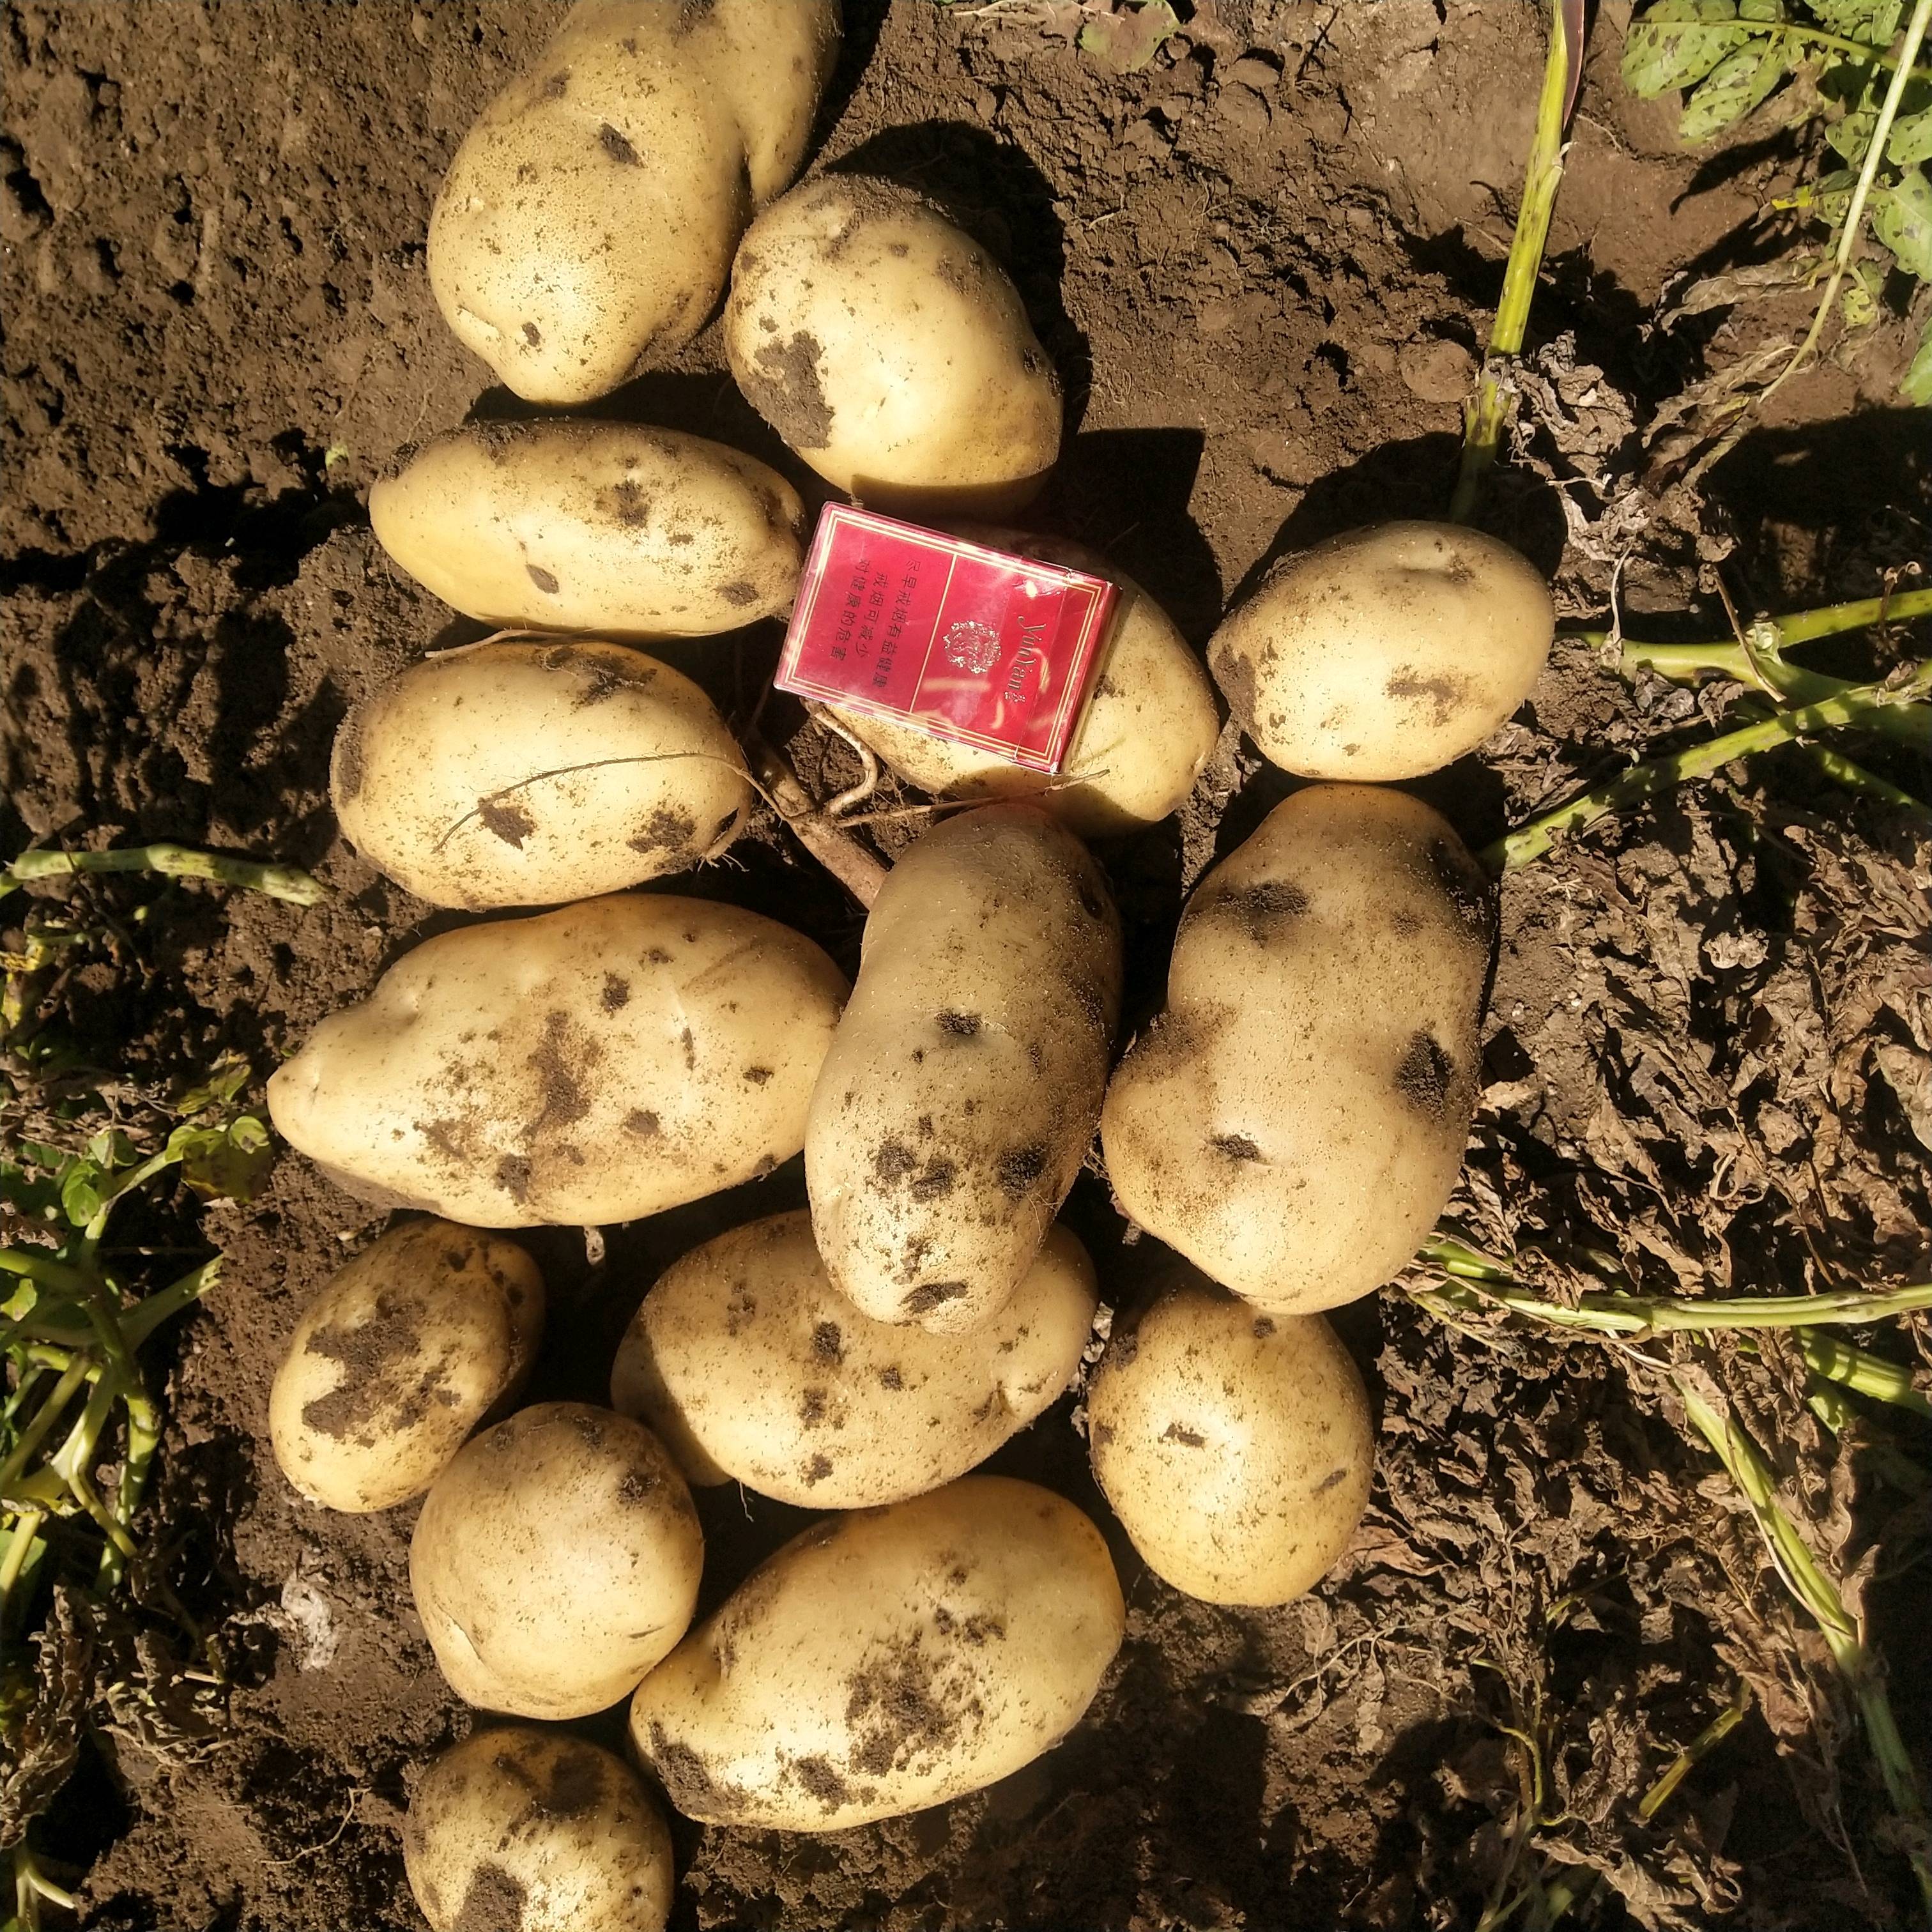 代收 土豆南瓜 品种 226 希森6 荷兰十五 v7 大白花 等黄心白心都有 有需要的老板欢迎来电13614842884